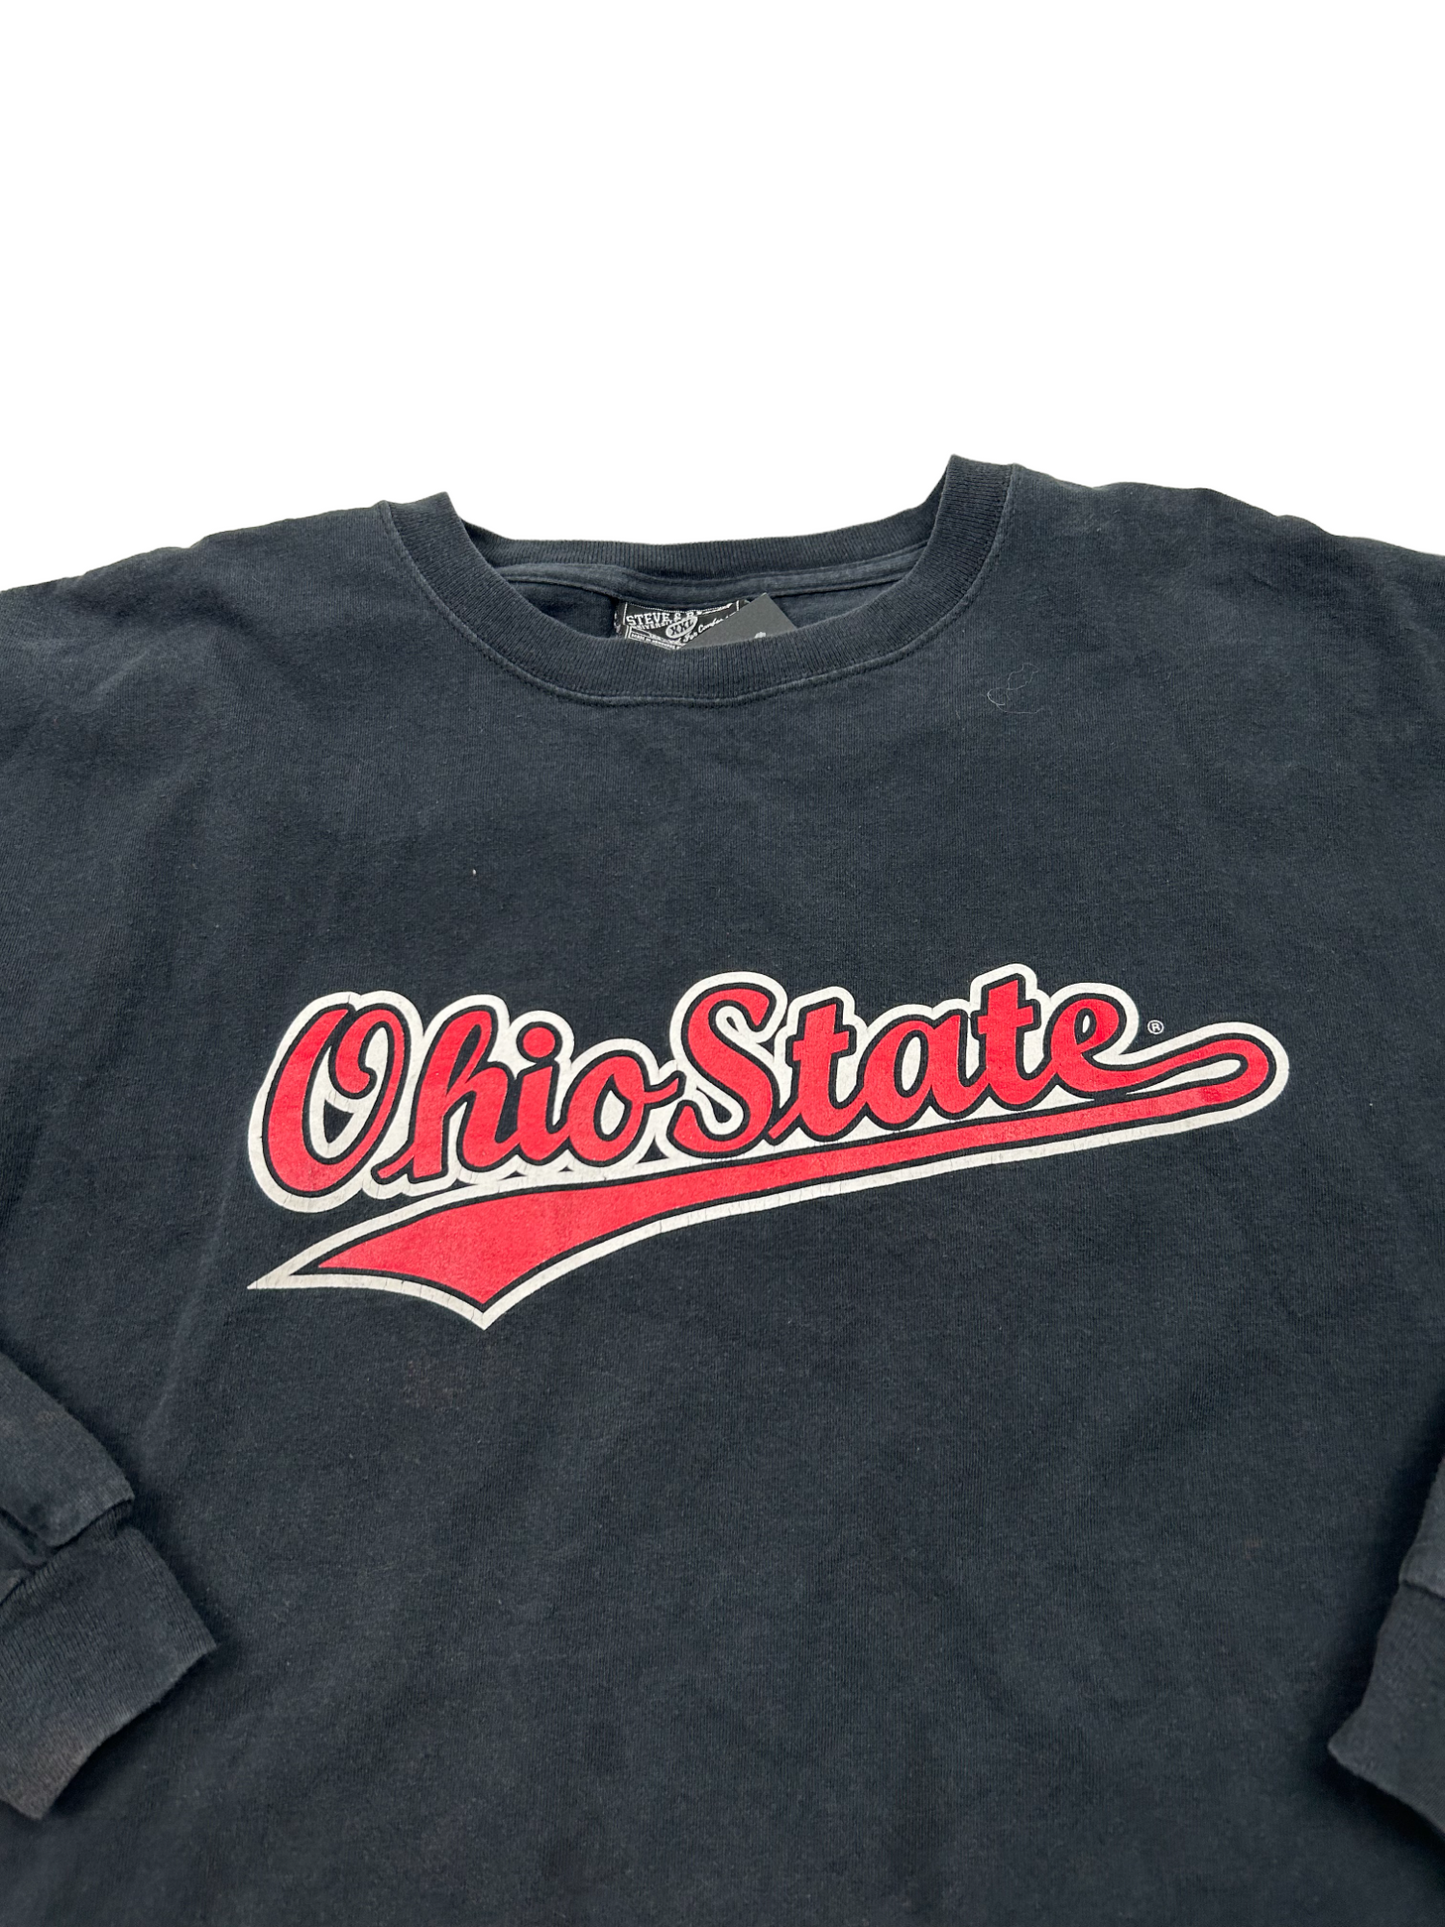 Ohio State Black Long-Sleeve